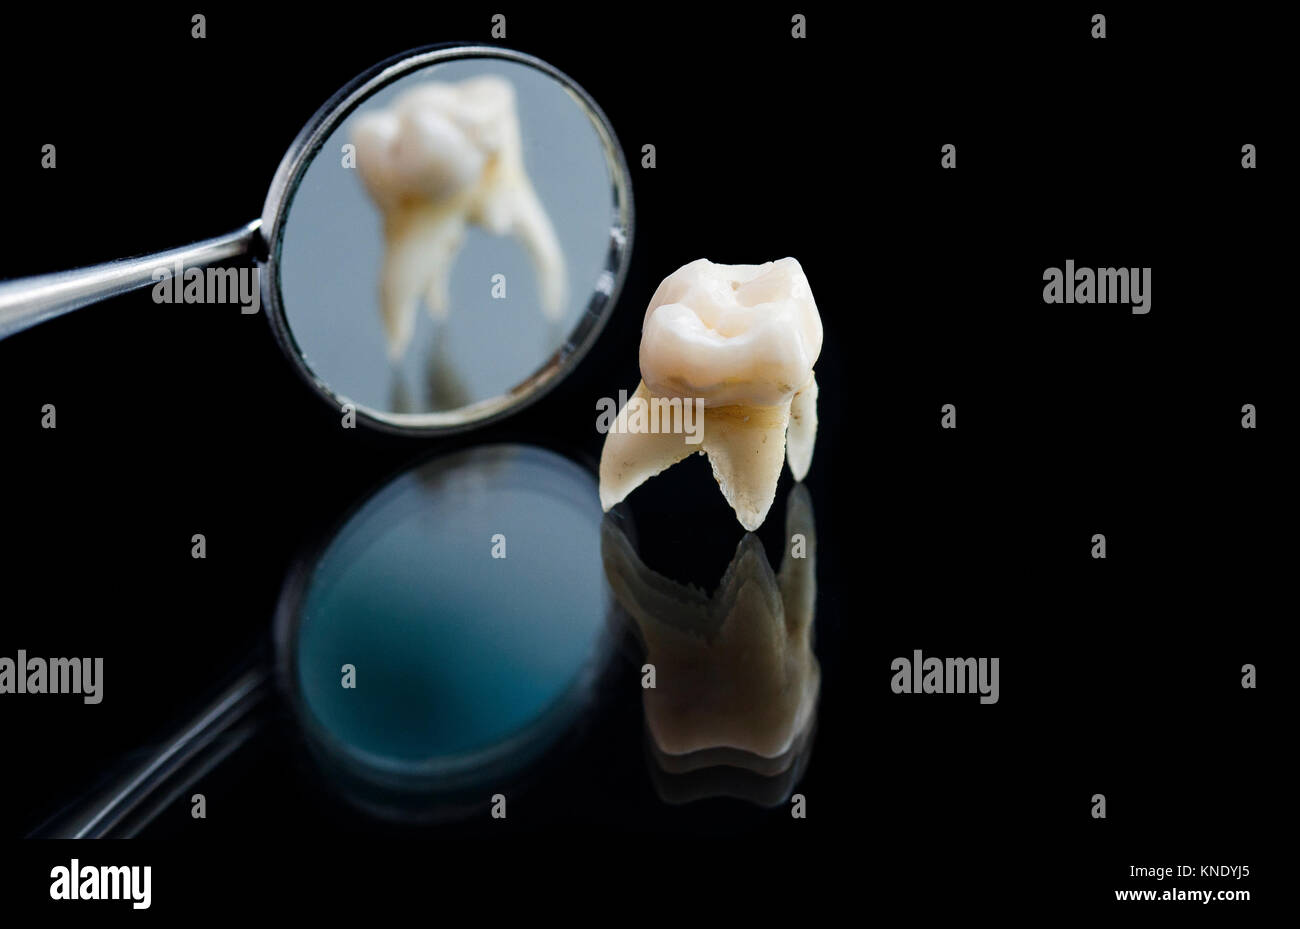 Mauvaise dent pourri retiré avec une pince métallique et se reflète dans le miroir dentaire Banque D'Images